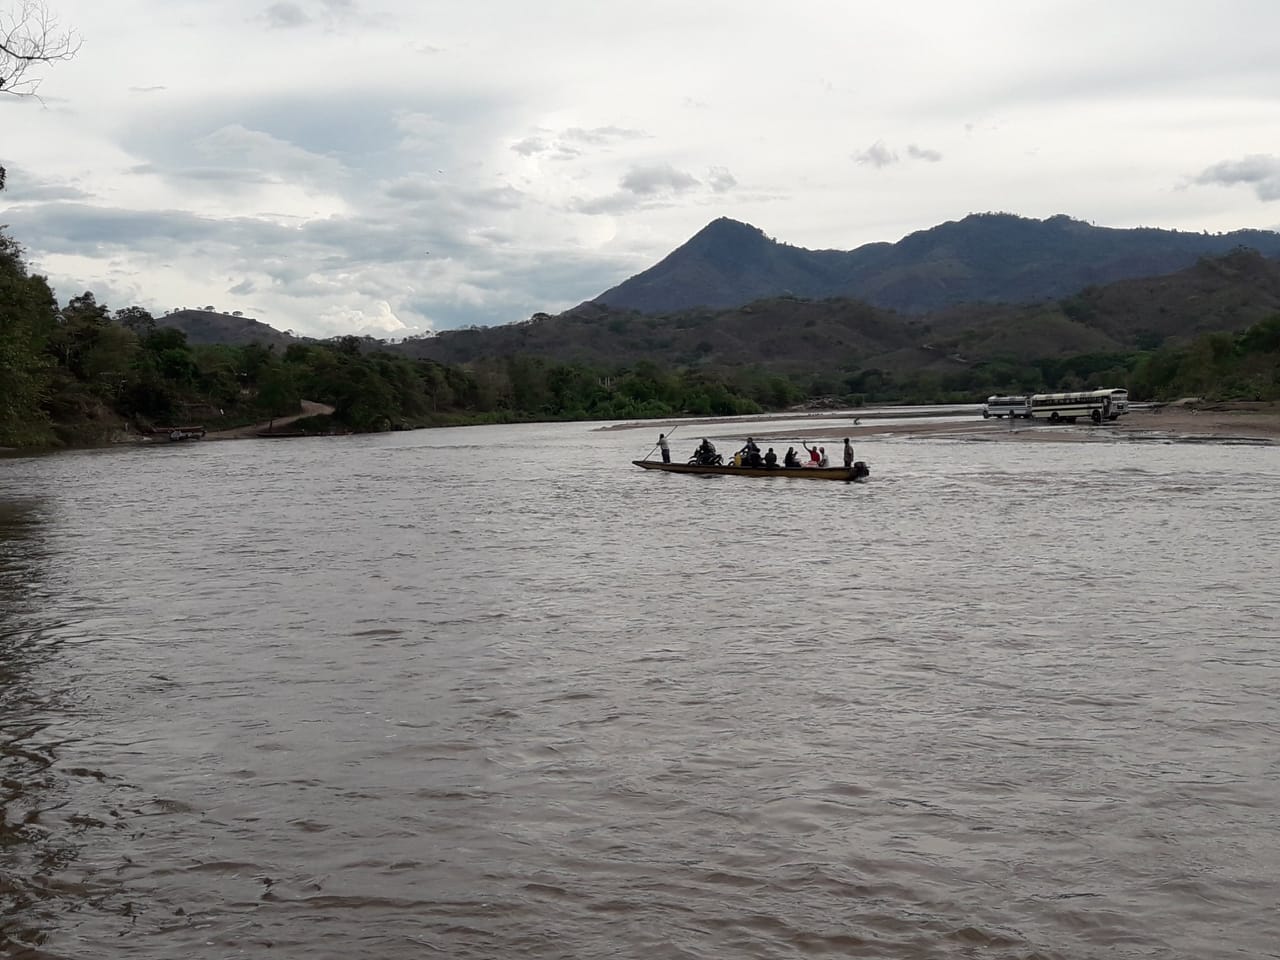 Rio Coco in Wiwili-Jinotega. Photo credit: Ian Vellenga